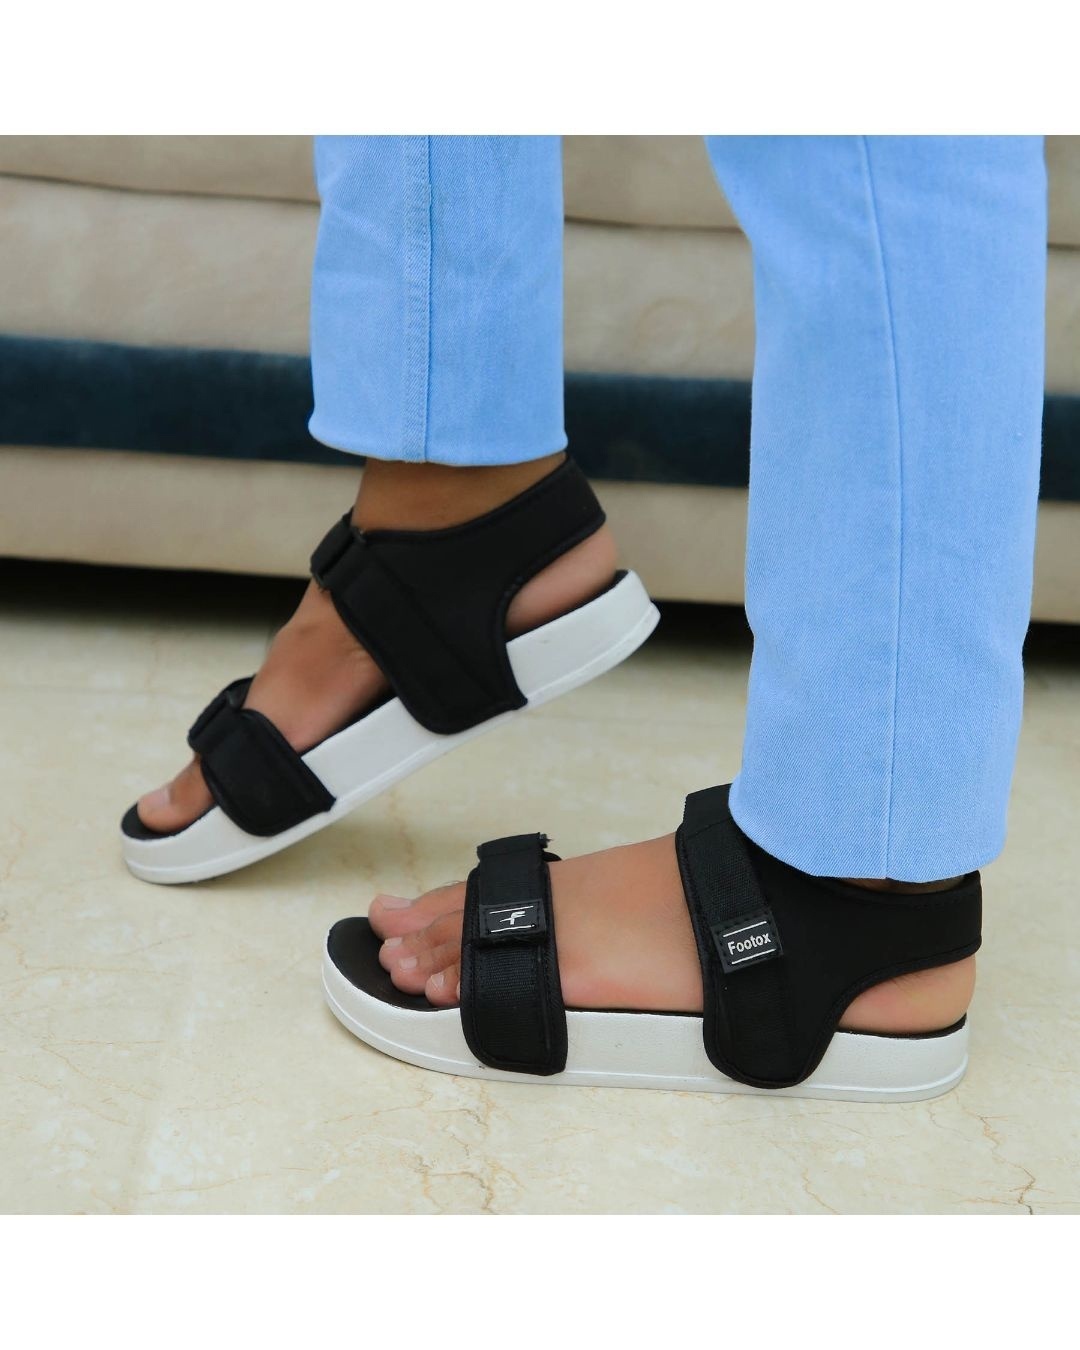 Shop Black Comfort Sandals For Men